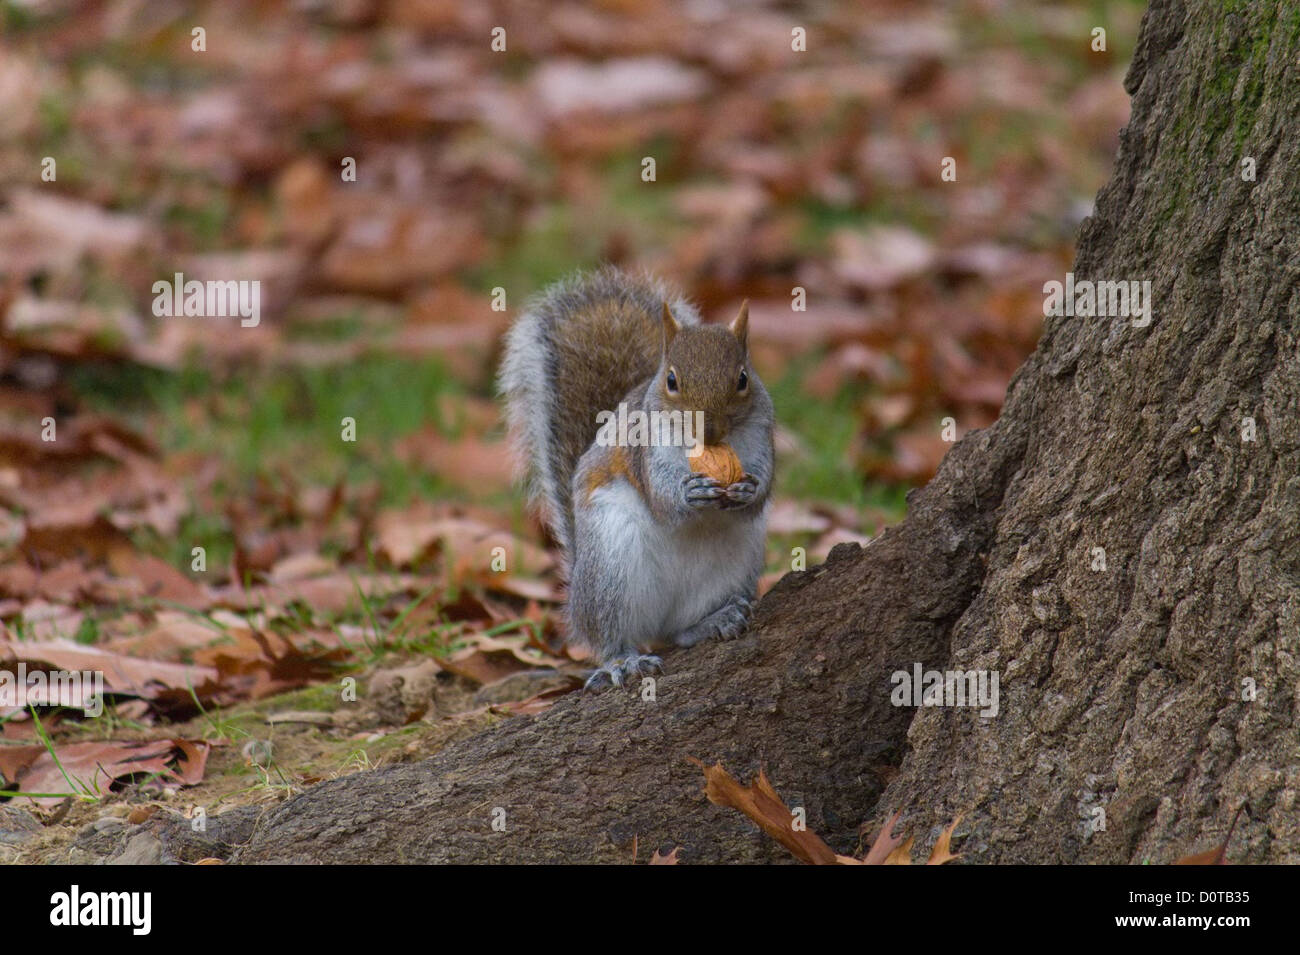 Squirrel with nut (Scoiattolo con noce) Stock Photo